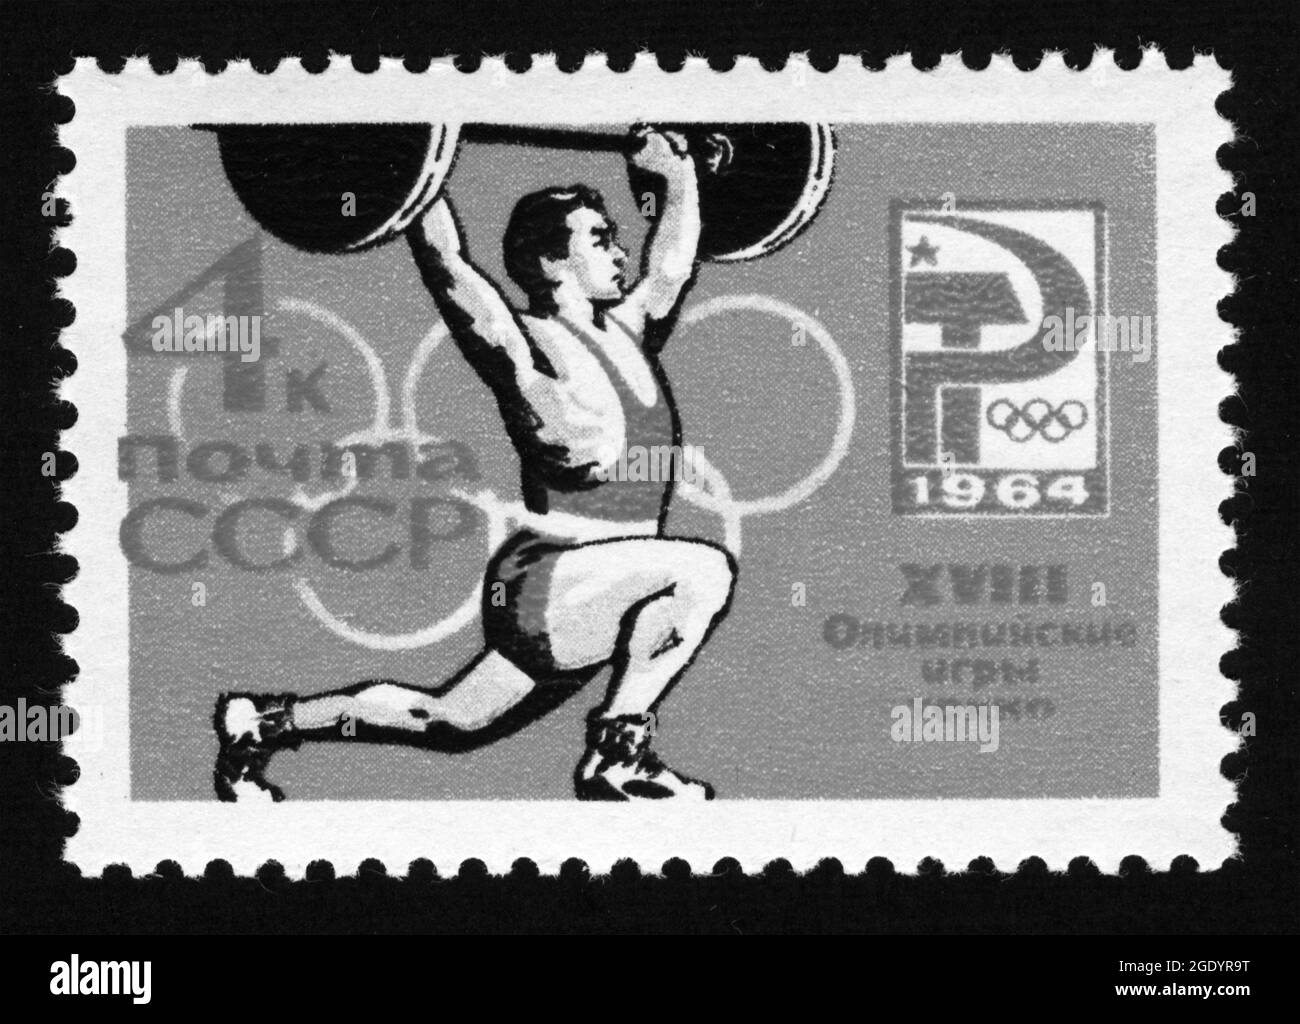 Stampa francobollo in URSS,1964,sport,XVIII Giochi Olimpici, Tokyo,barbell, sollevamento pesi Foto Stock